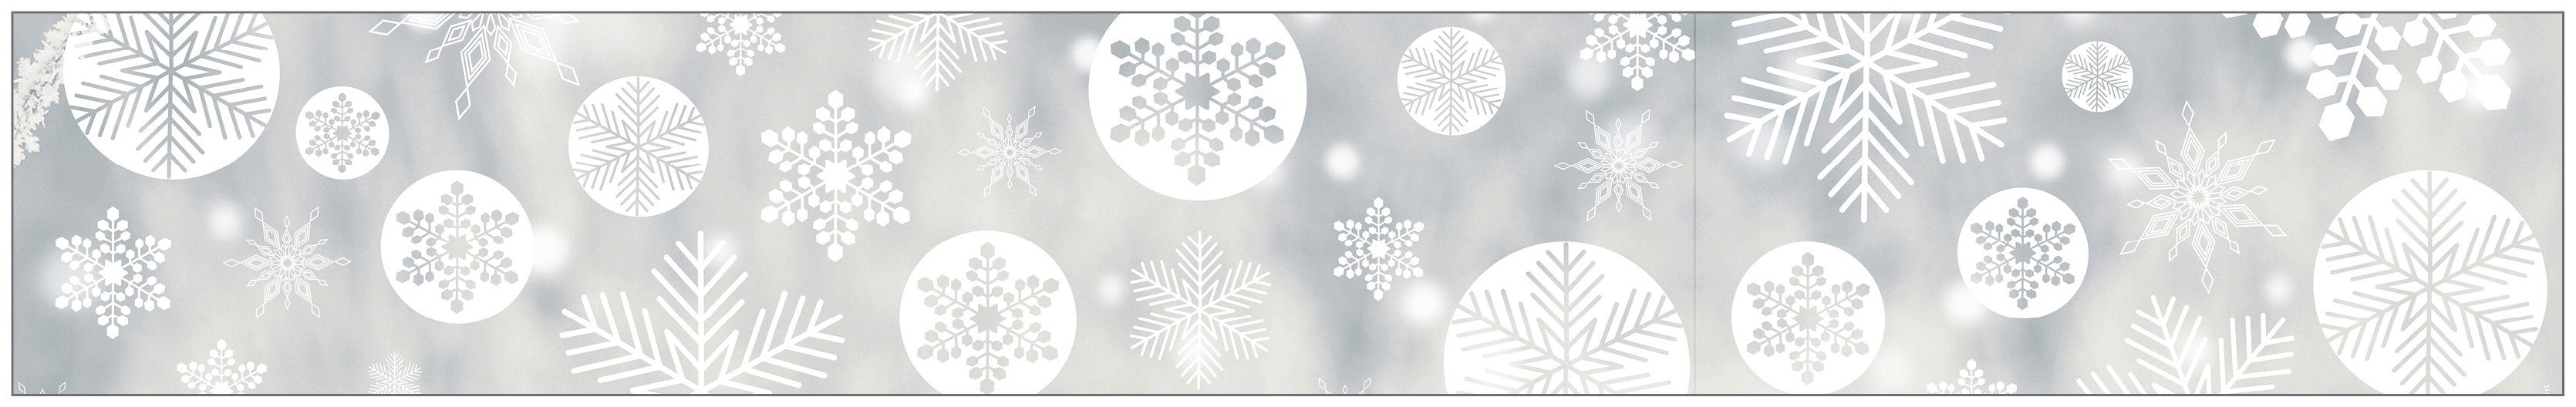 Fensterfolie Look Snowy white, MySpotti, halbtransparent, glatt, 200 x 30 cm, statisch haftend